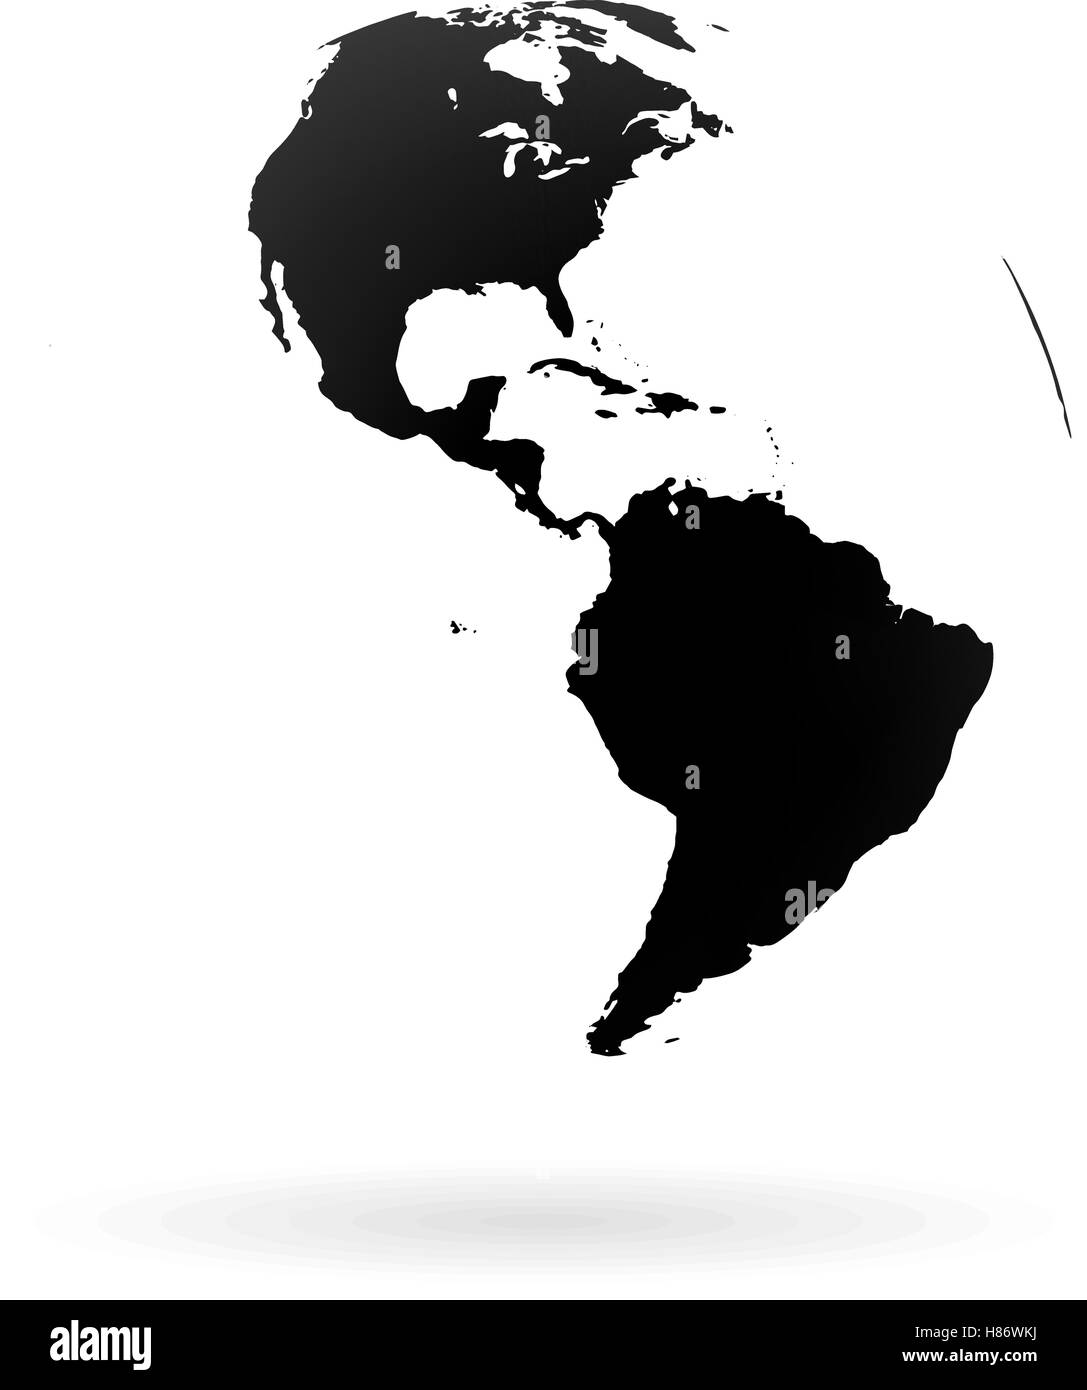 Globe terrestre très détaillées, symbole de l'Amérique du Nord et du Sud. Noir sur fond blanc. Illustration de Vecteur